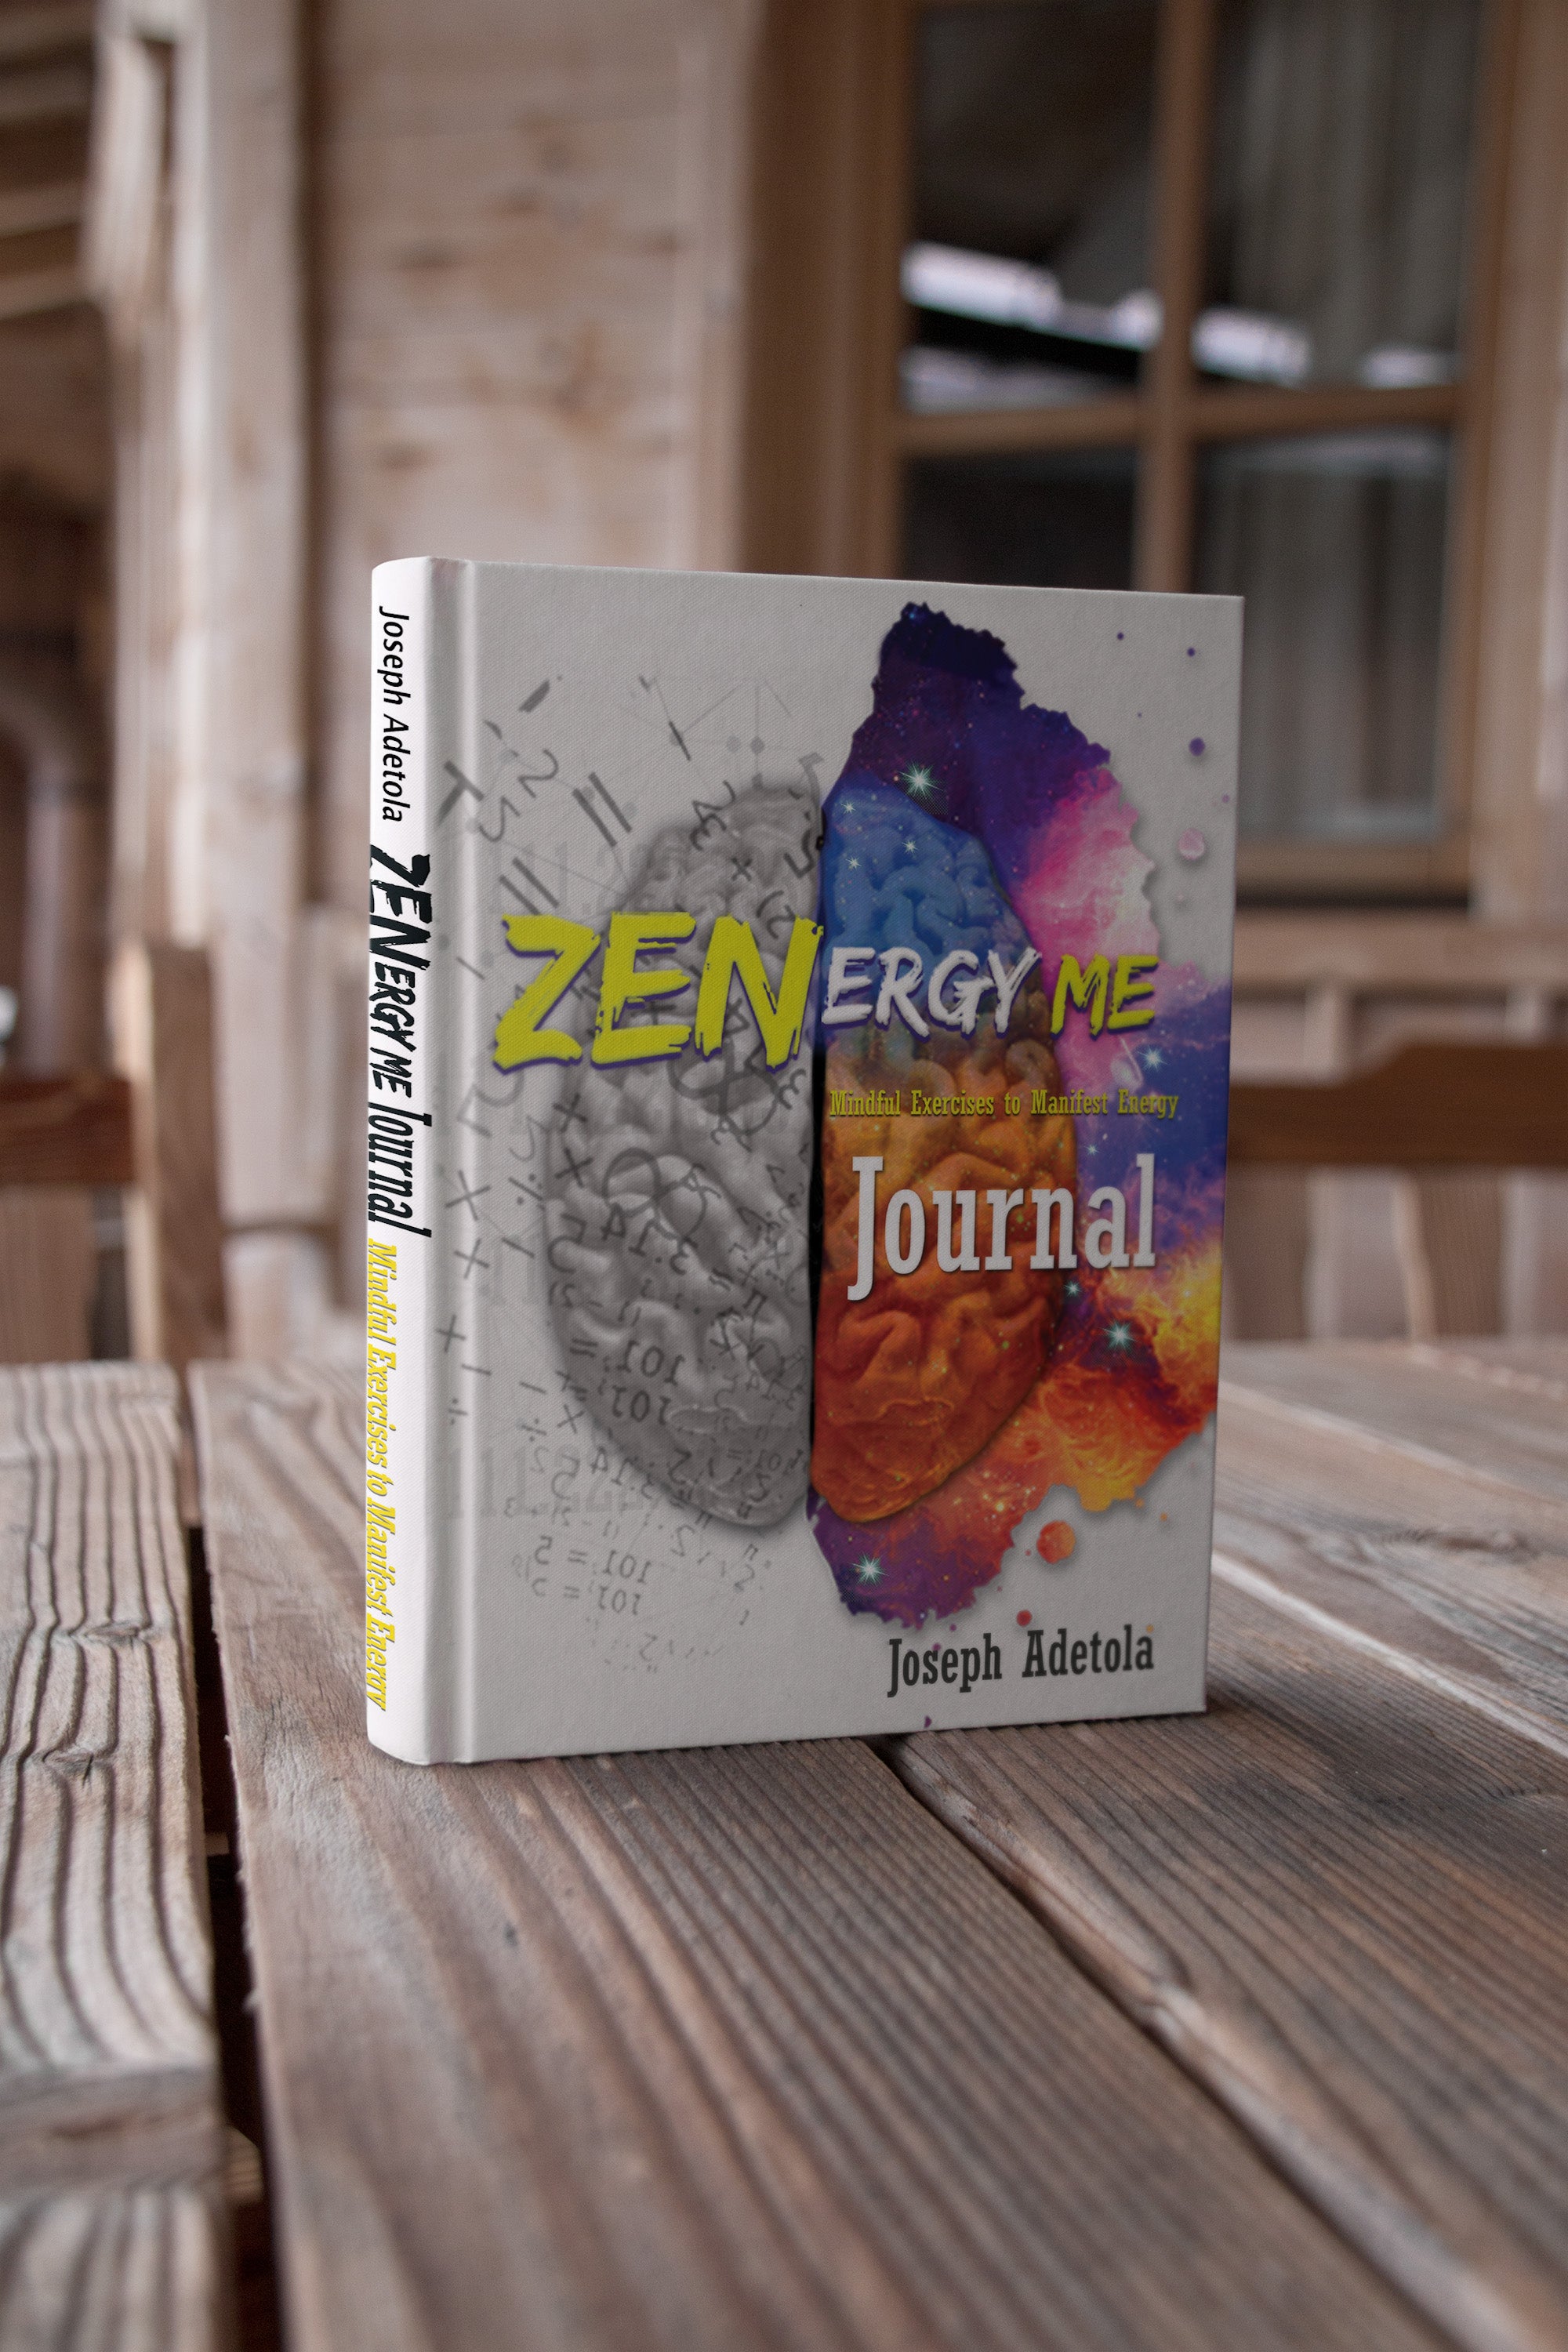 ZenergyMe (Manifest Energy) Journal